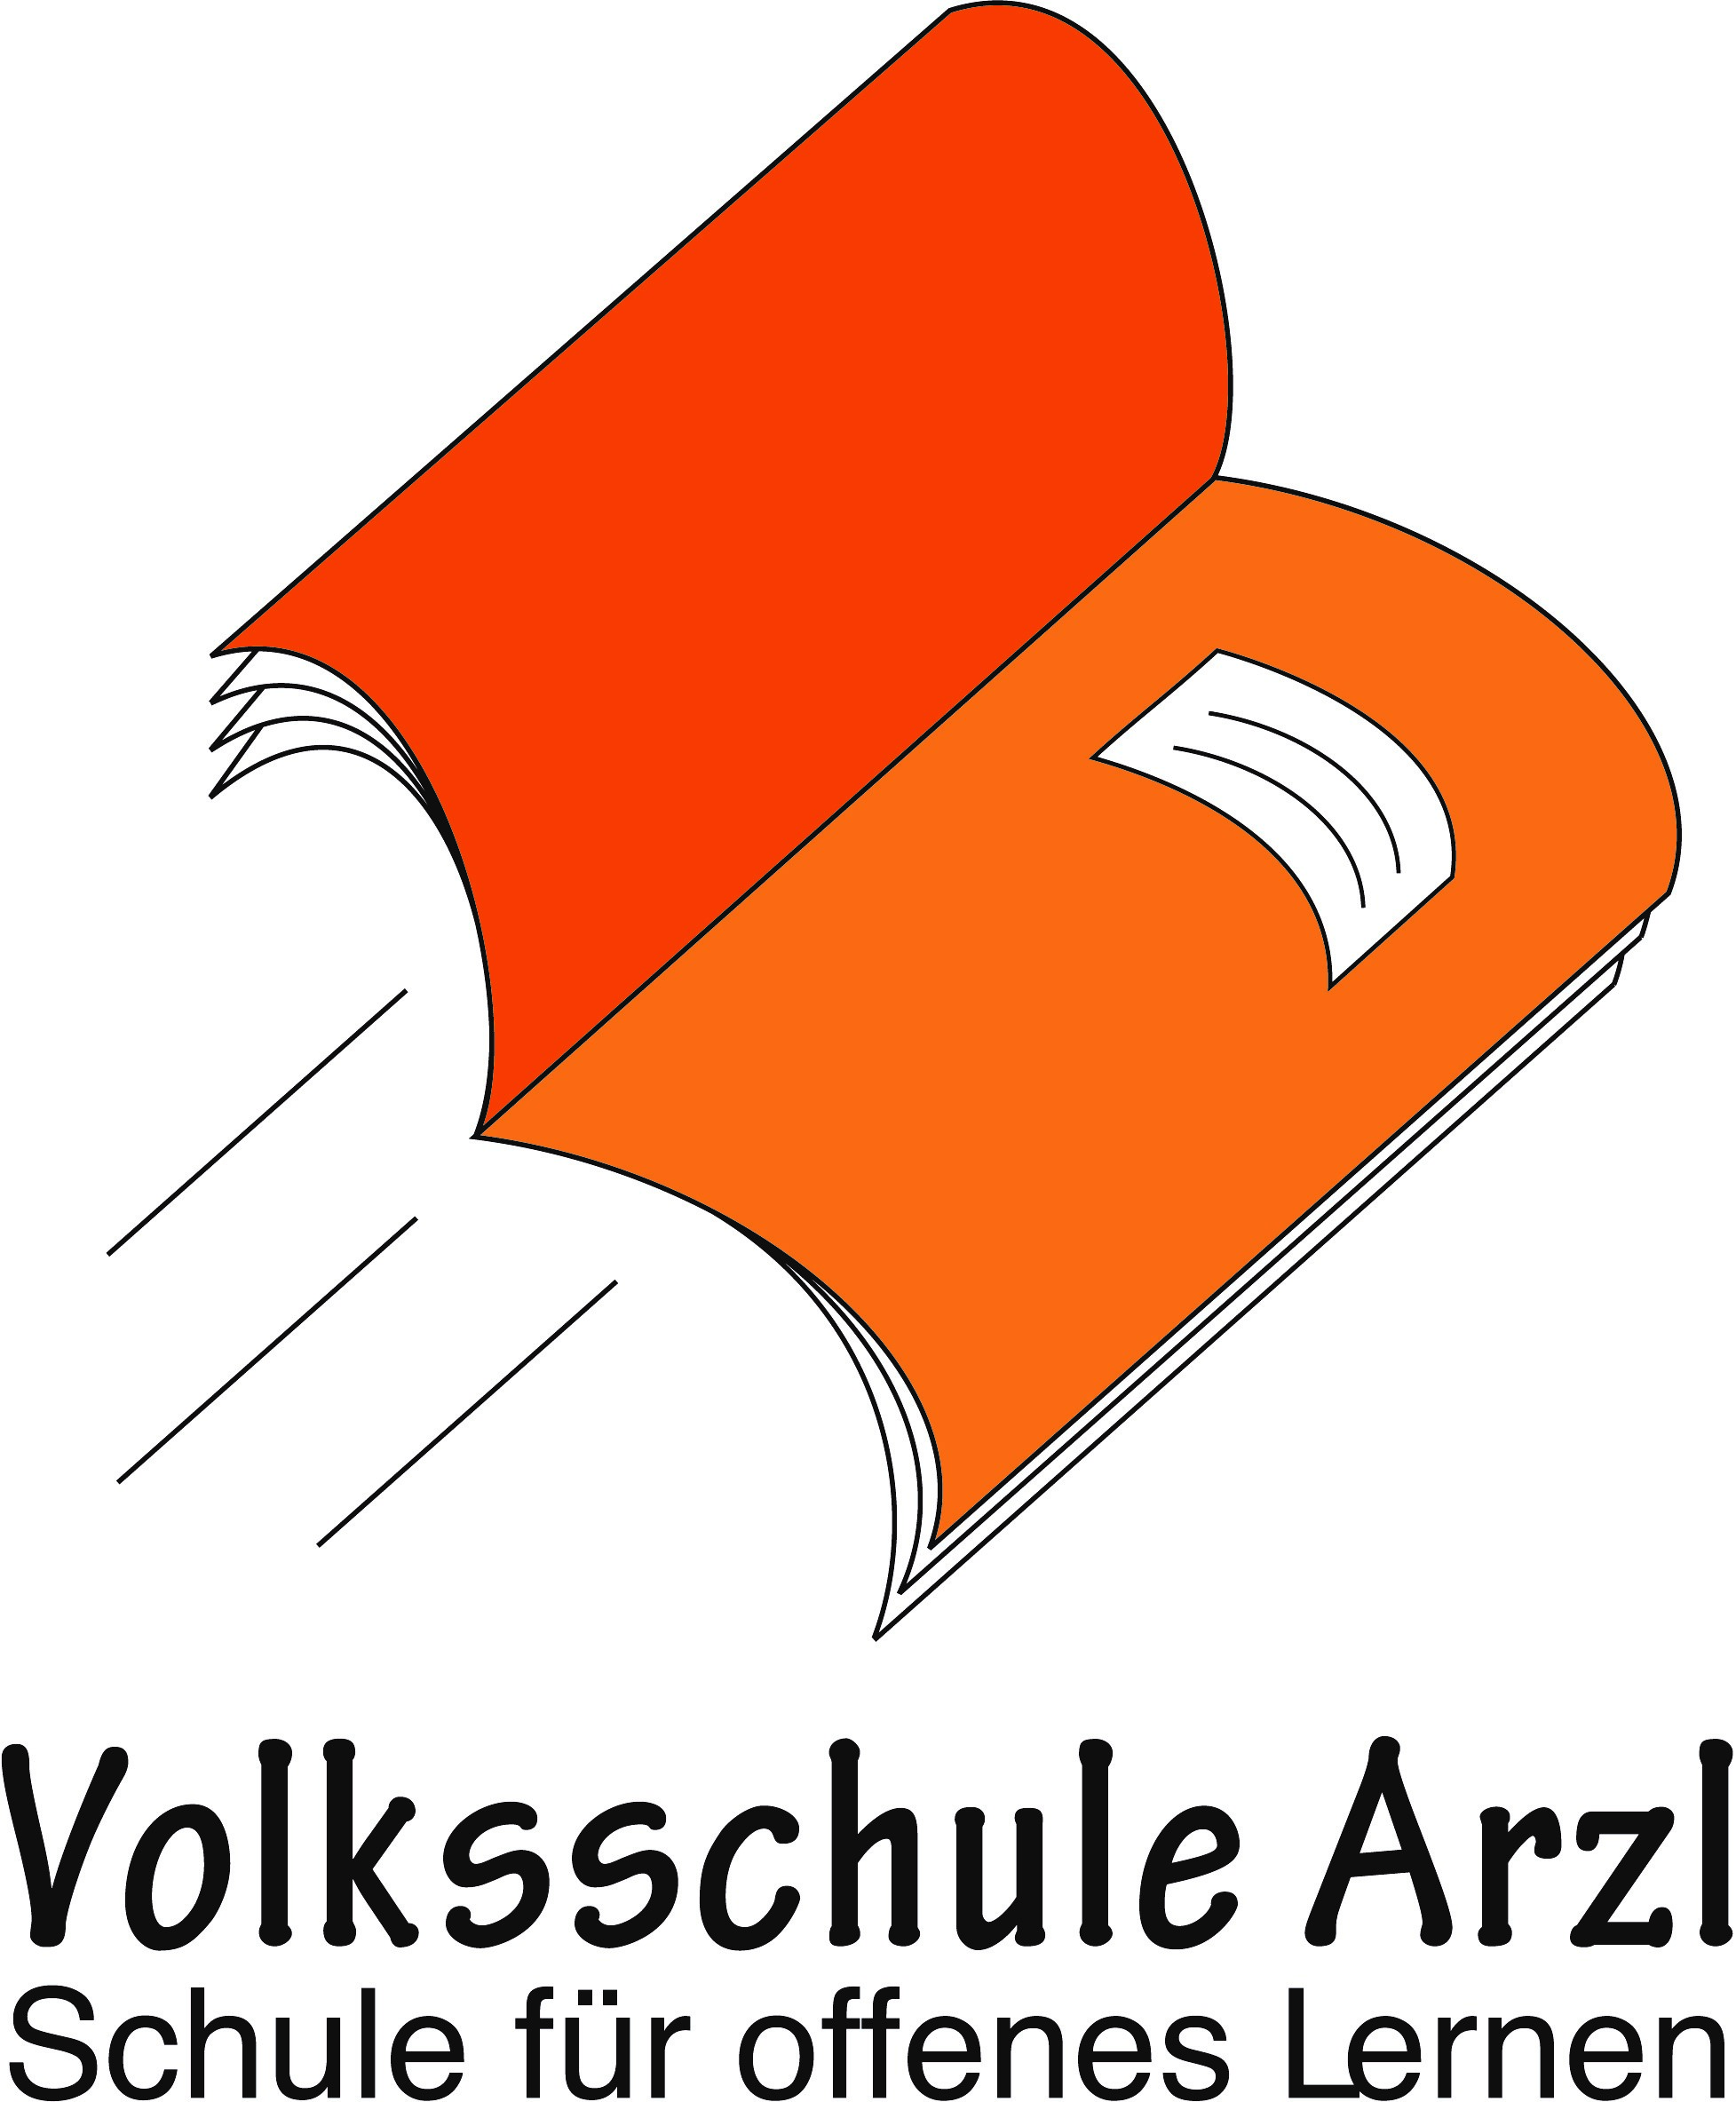 Logo Pädagogische Hochschule Tirol. Auf weißem Hintergrund ist in roter Schrift der Titel der Hochschule angeführt. 